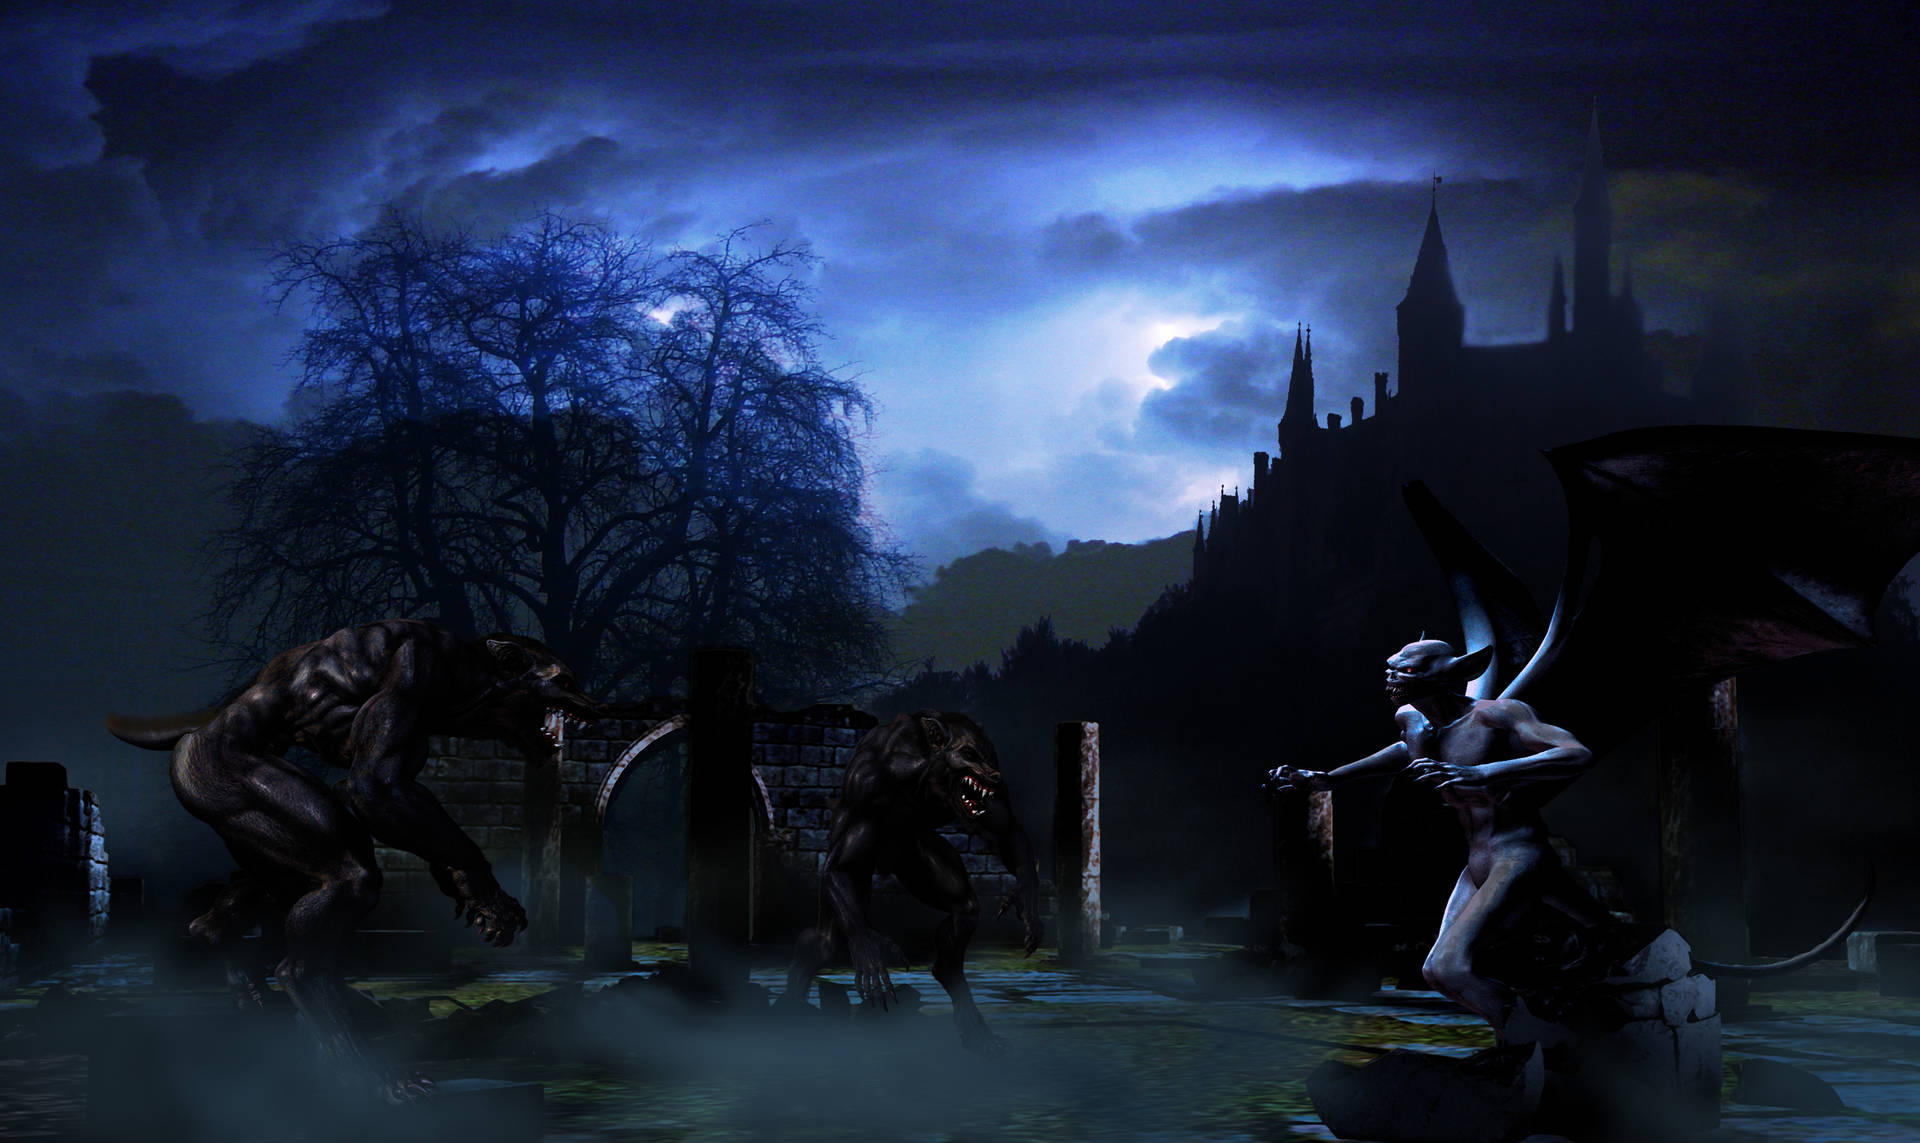 Werewolf Vs Demon At Castle Background